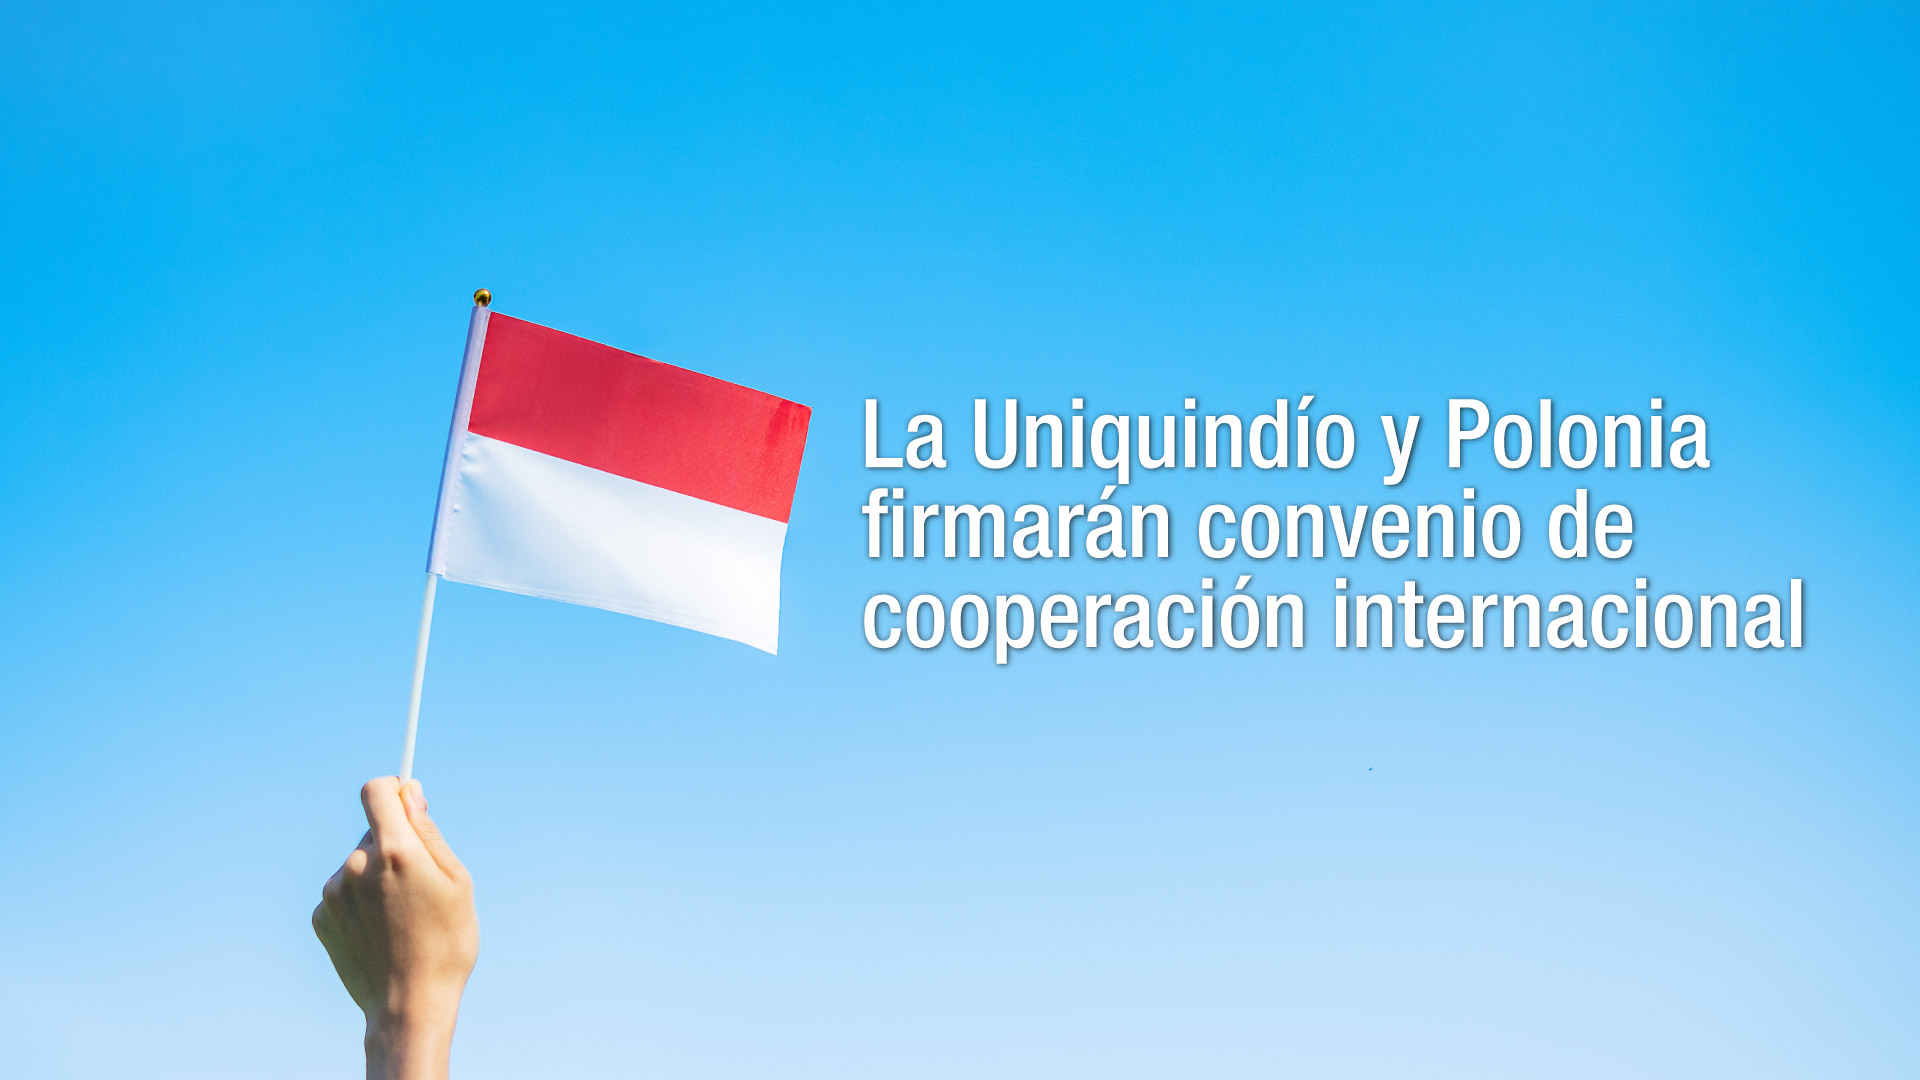 La Uniquindío y el Instituto de Polonia firmarán convenio de cooperación internacional